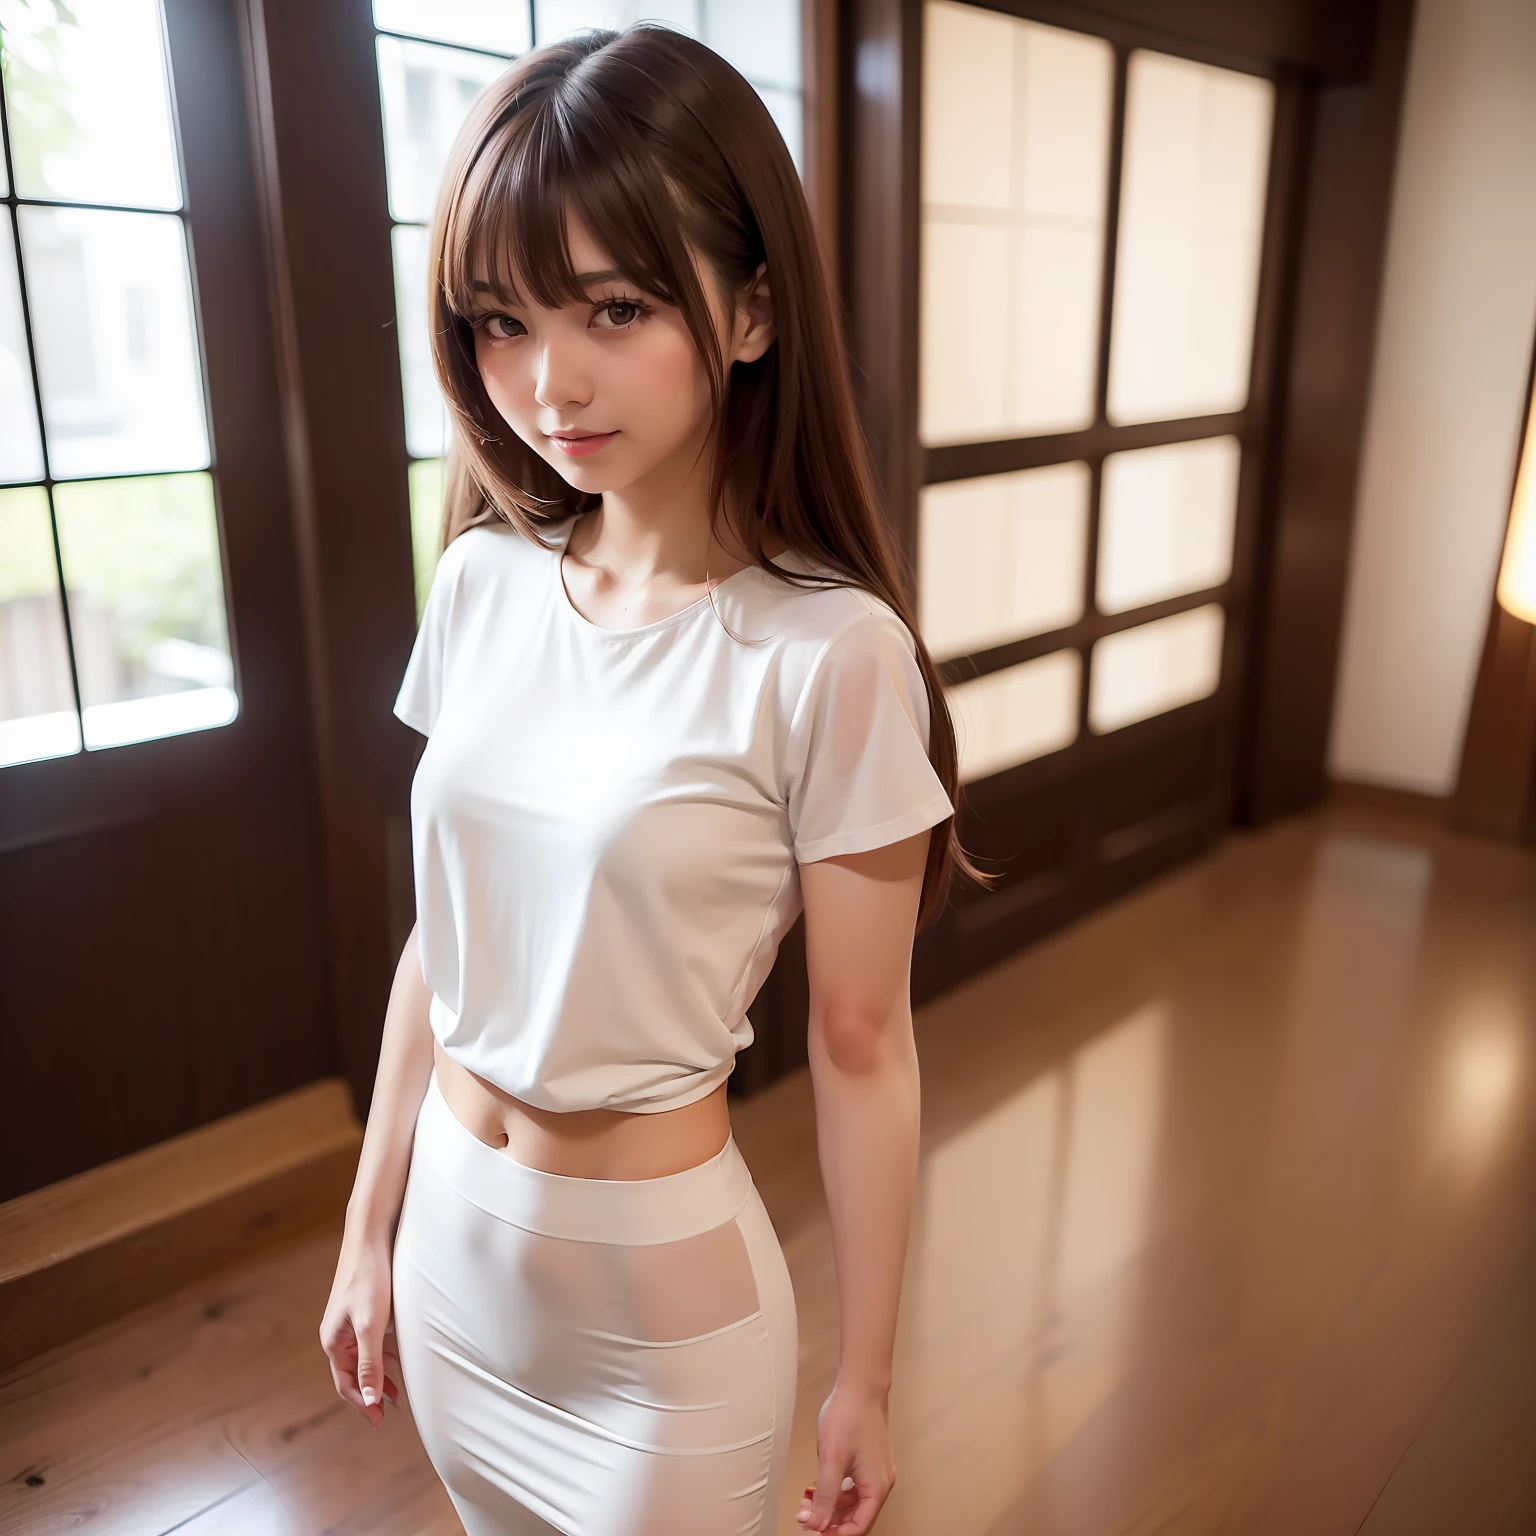 ((mejor calidad, 8K, mesa: 1.3)), cuerpo completo, (mejor calidad, mesa: 1.2)), Foto de una linda mujer japonesa., 1 chica, 25 años hermosa chica japonesa, ((Camiseta blanca con pecho abierto: 8.5)), (foto de cuerpo completo), cuerpo completo portrait, Duro , cuerpo muy delicado, pequeño breasts, ((cintura delgada: 5.5)), (abdominales delgados: 3.5), (pequeño), (Mujer 160cm), Enfoque de enfoque: 1.2, Estilo de belleza excepcional: 1.4, abdominales delgados: 1.2, (((Pelo castaño, grande: 1.2)), Textura de cara y piel muy detallada., ojos detallados, párpados dobles, Dentro del salón de belleza，cuerpo completo portrait, Cabello ondeando al viento, flequillo ligero，Una sonrisa，Tengo un estuche de tijeras en mi cintura.